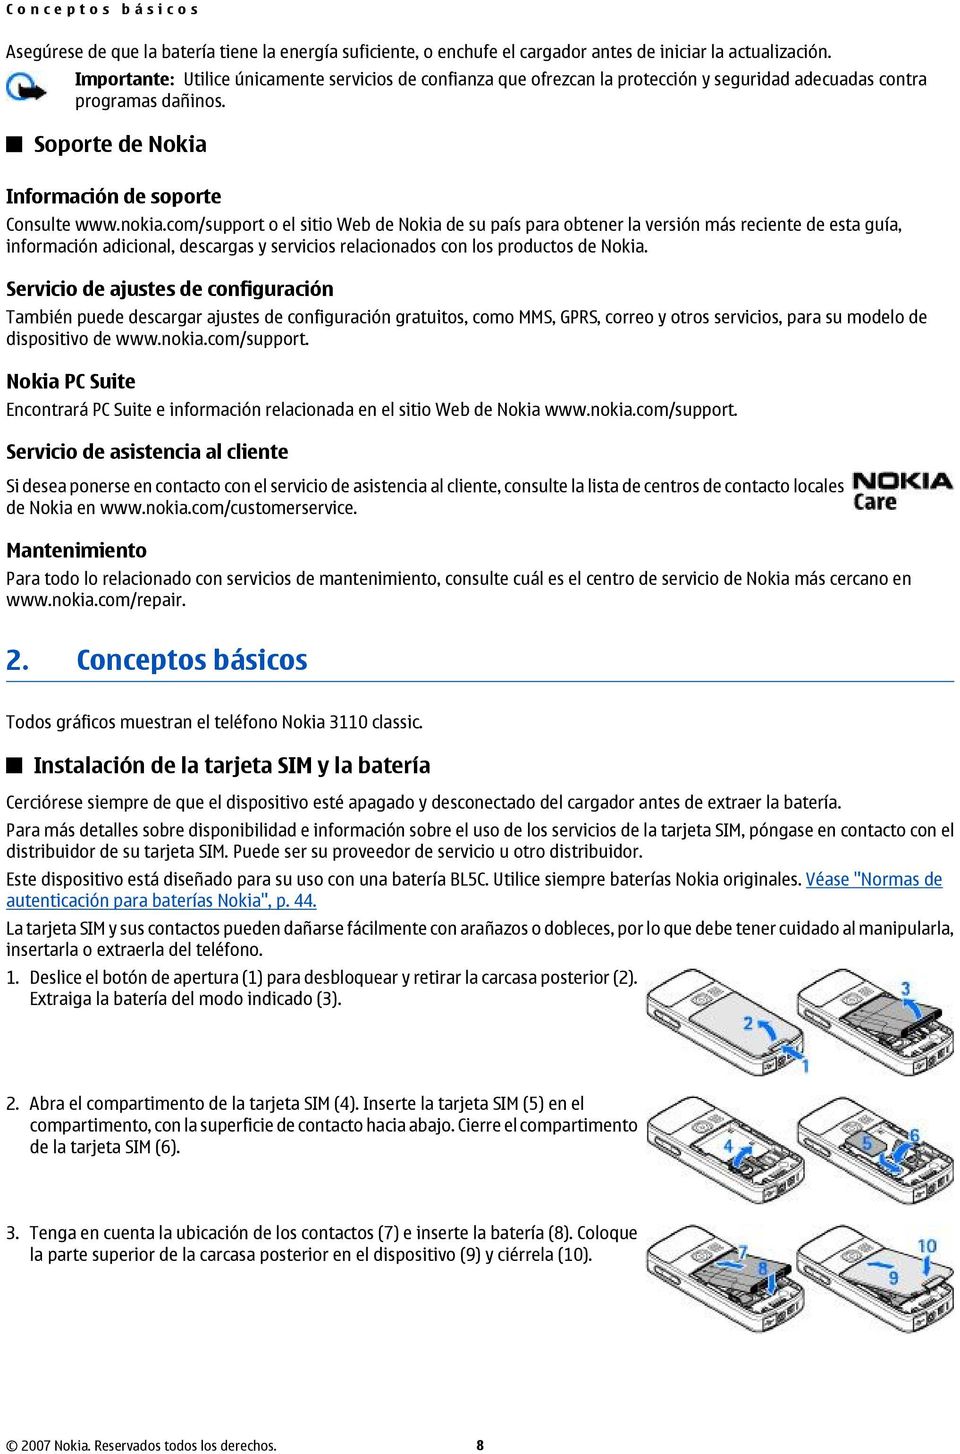 com/support o el sitio Web de Nokia de su país para obtener la versión más reciente de esta guía, información adicional, descargas y servicios relacionados con los productos de Nokia.